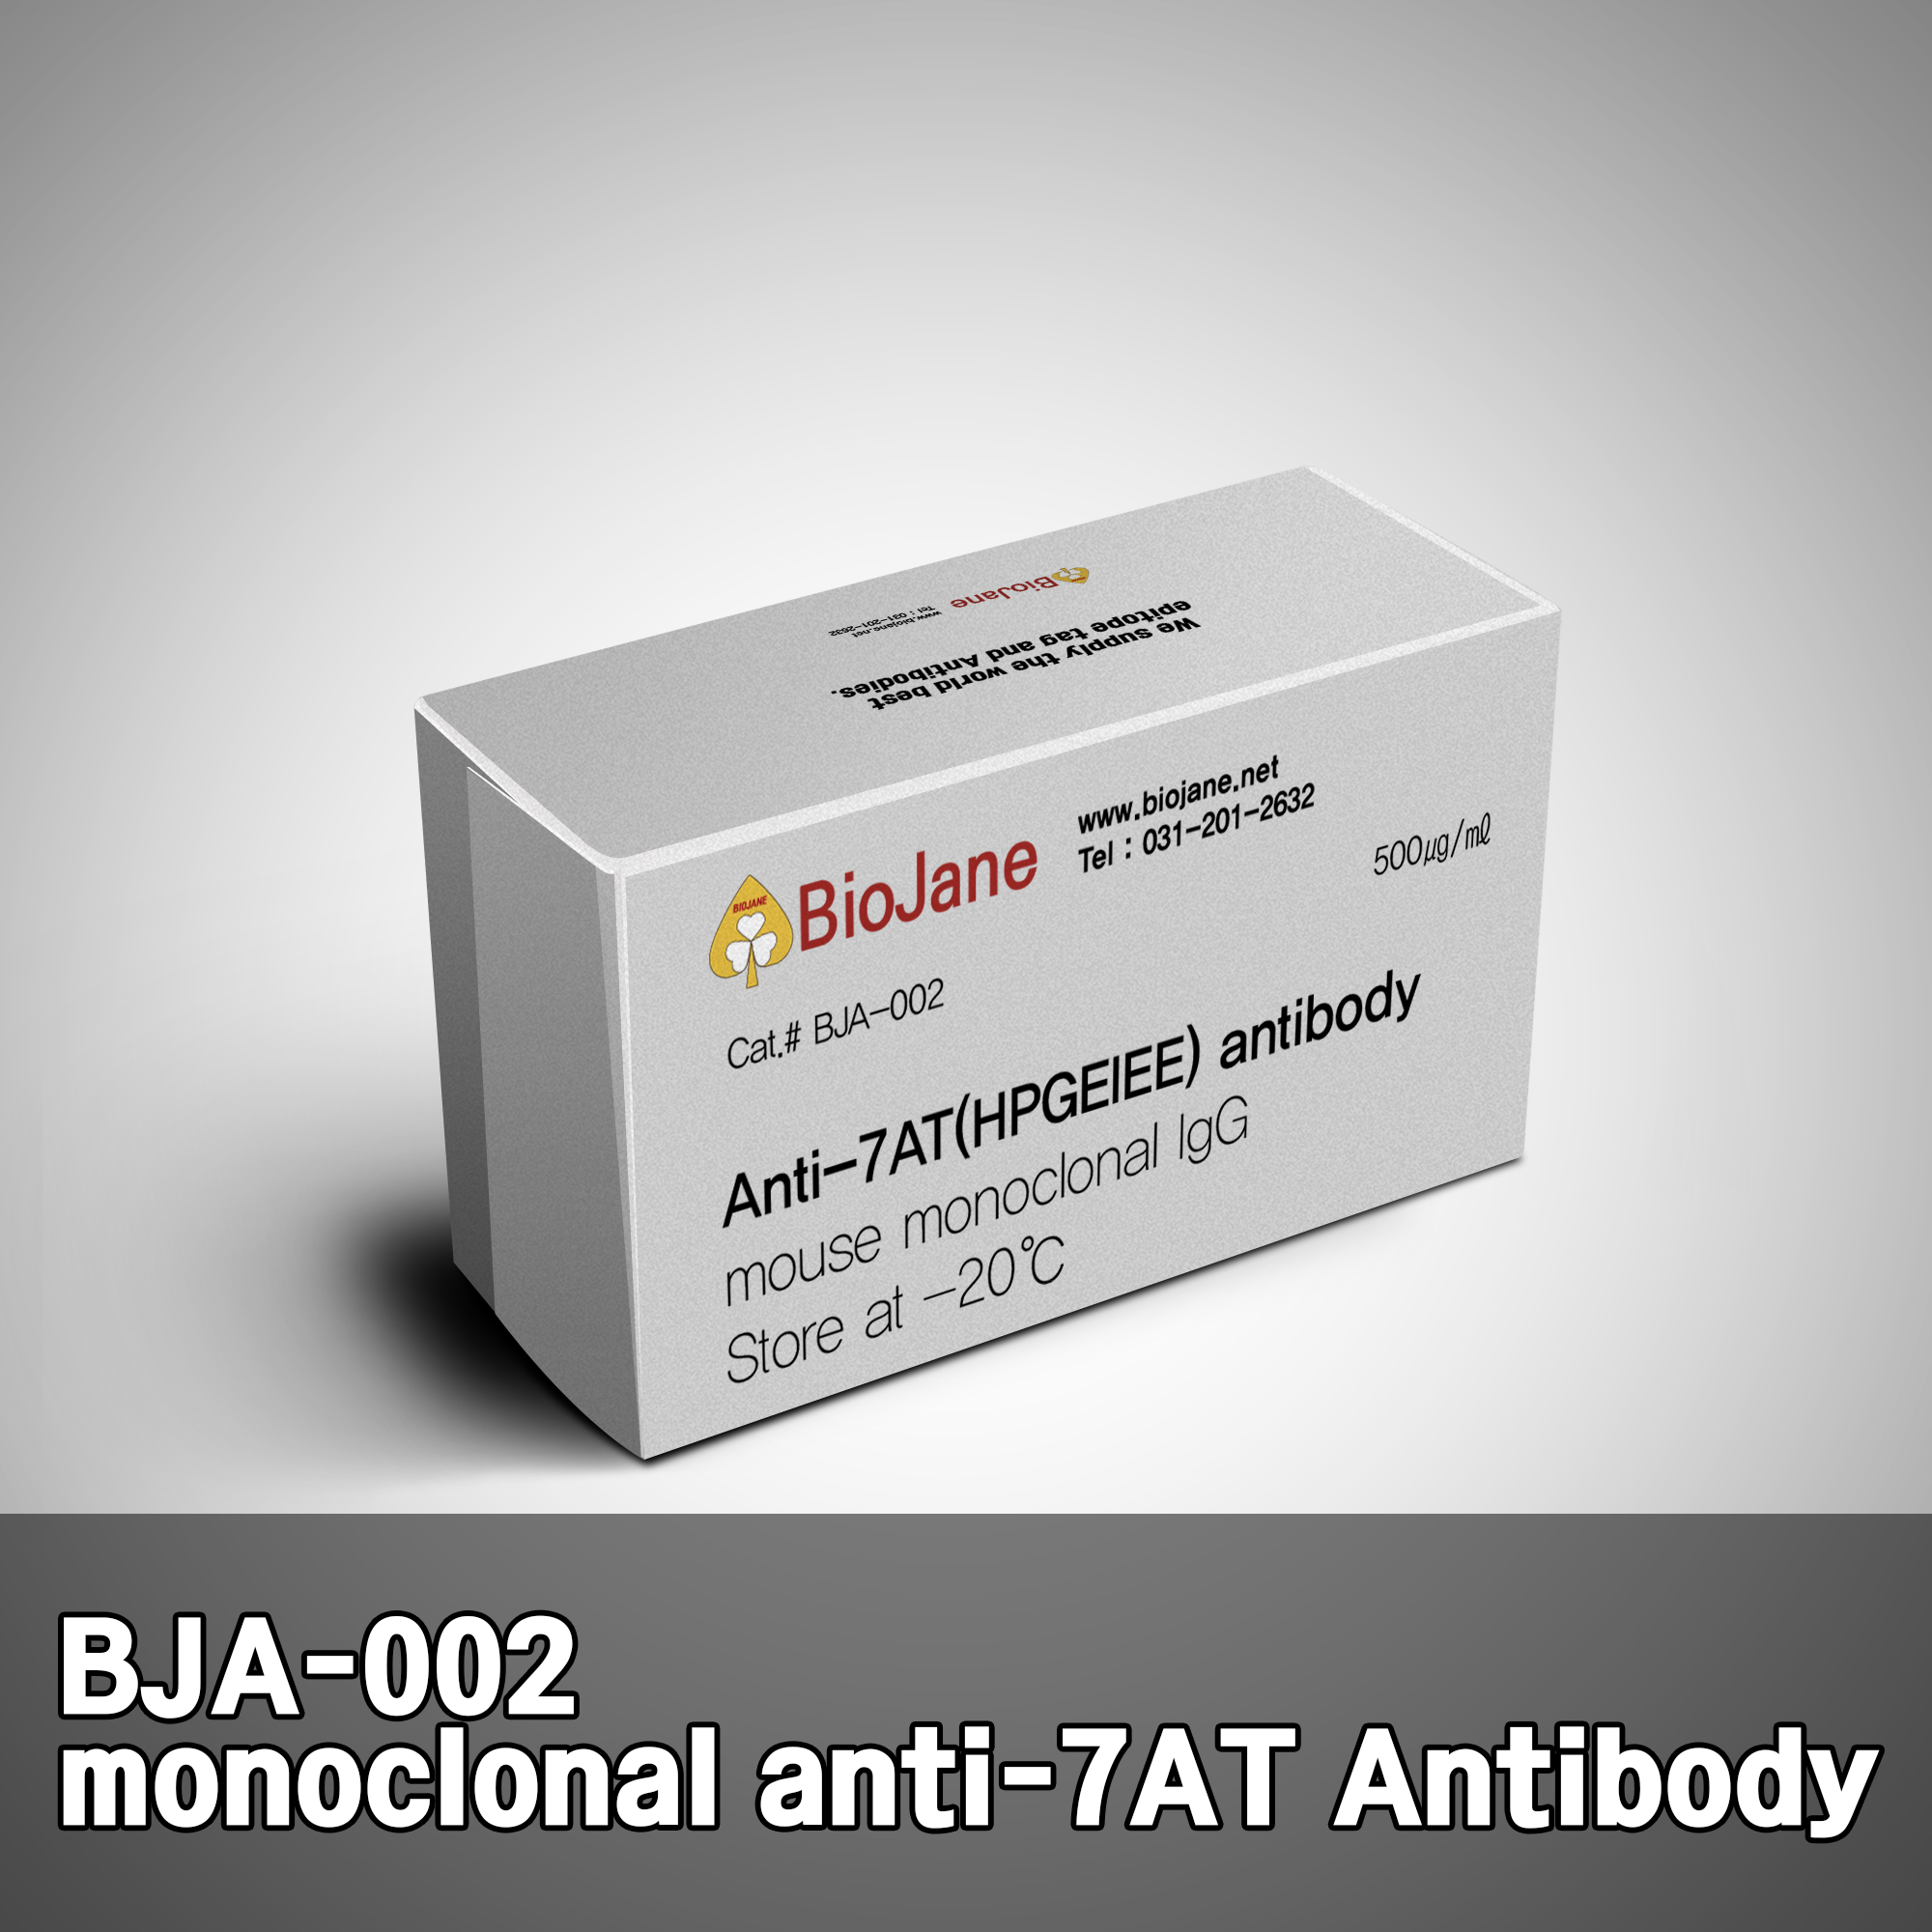 [항체] Anti-7AT antibody, monoclonal